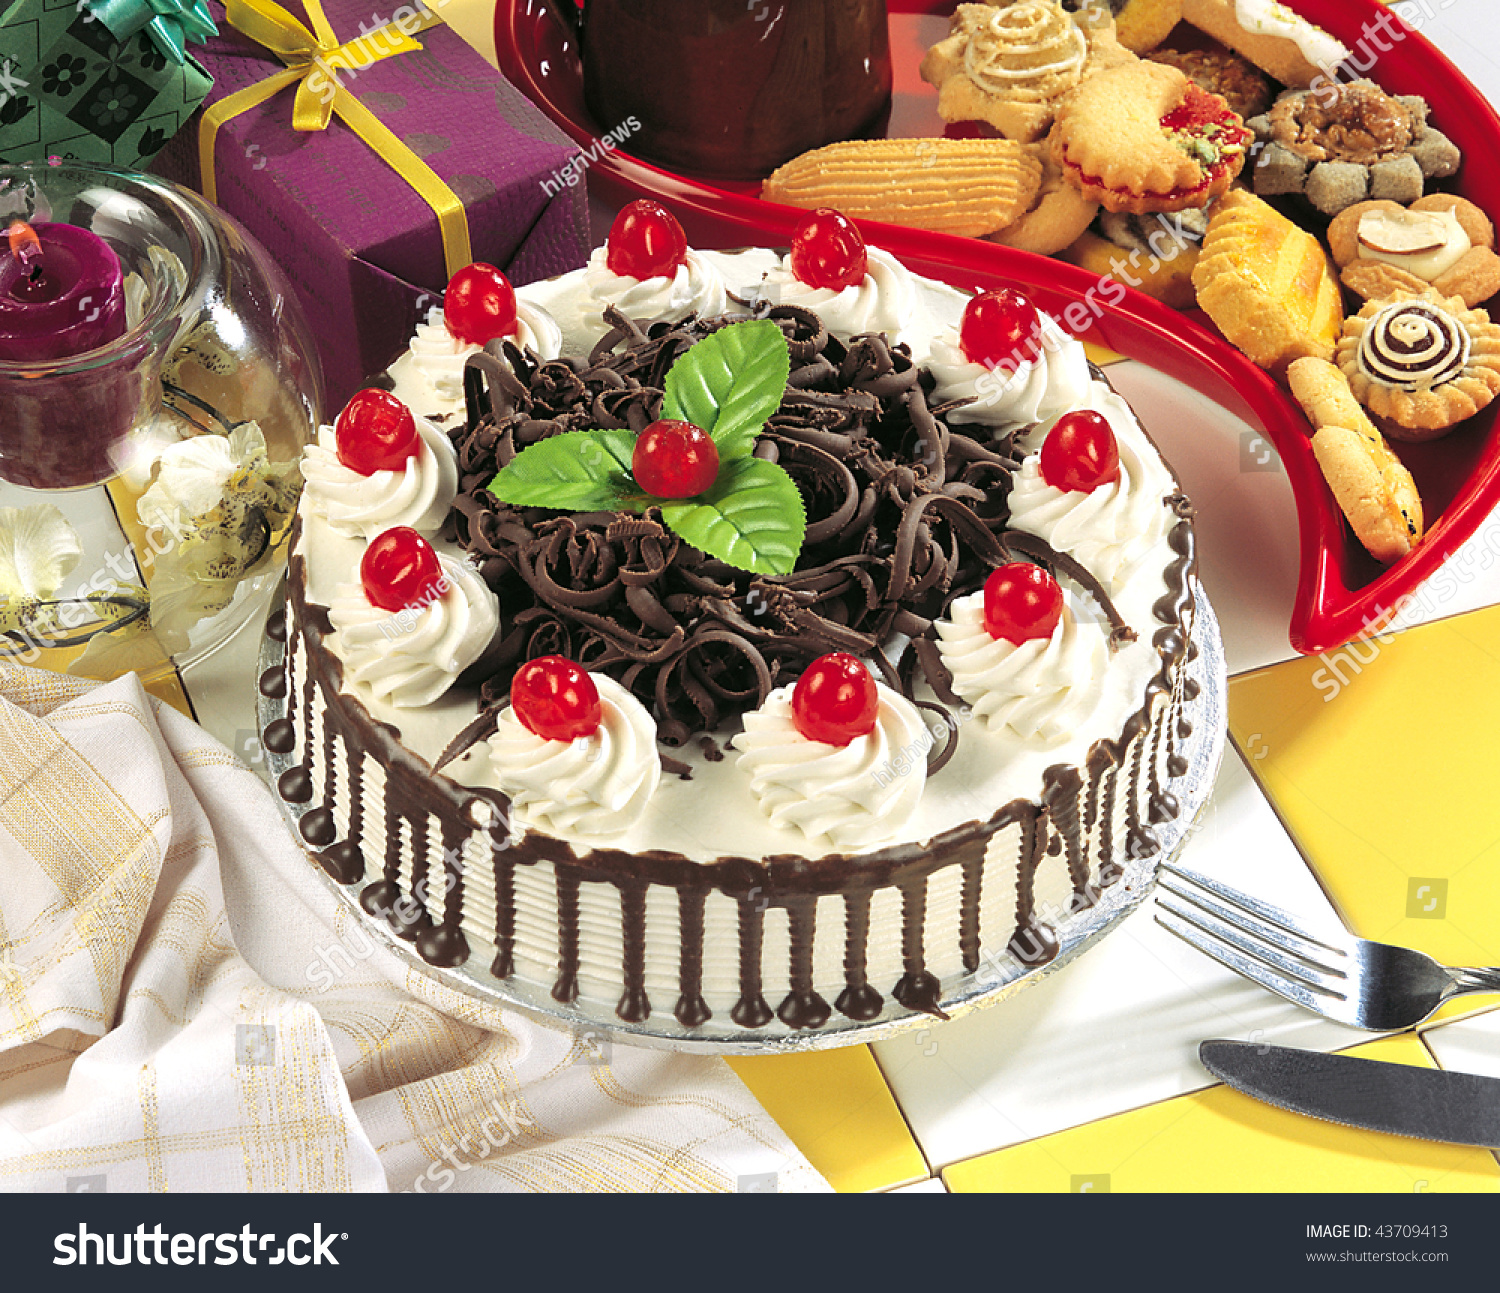 День торта картинка. Украшение торта. Красивое украшение торта. Красивые торты на день рождения. Праздничное украшение тортов.